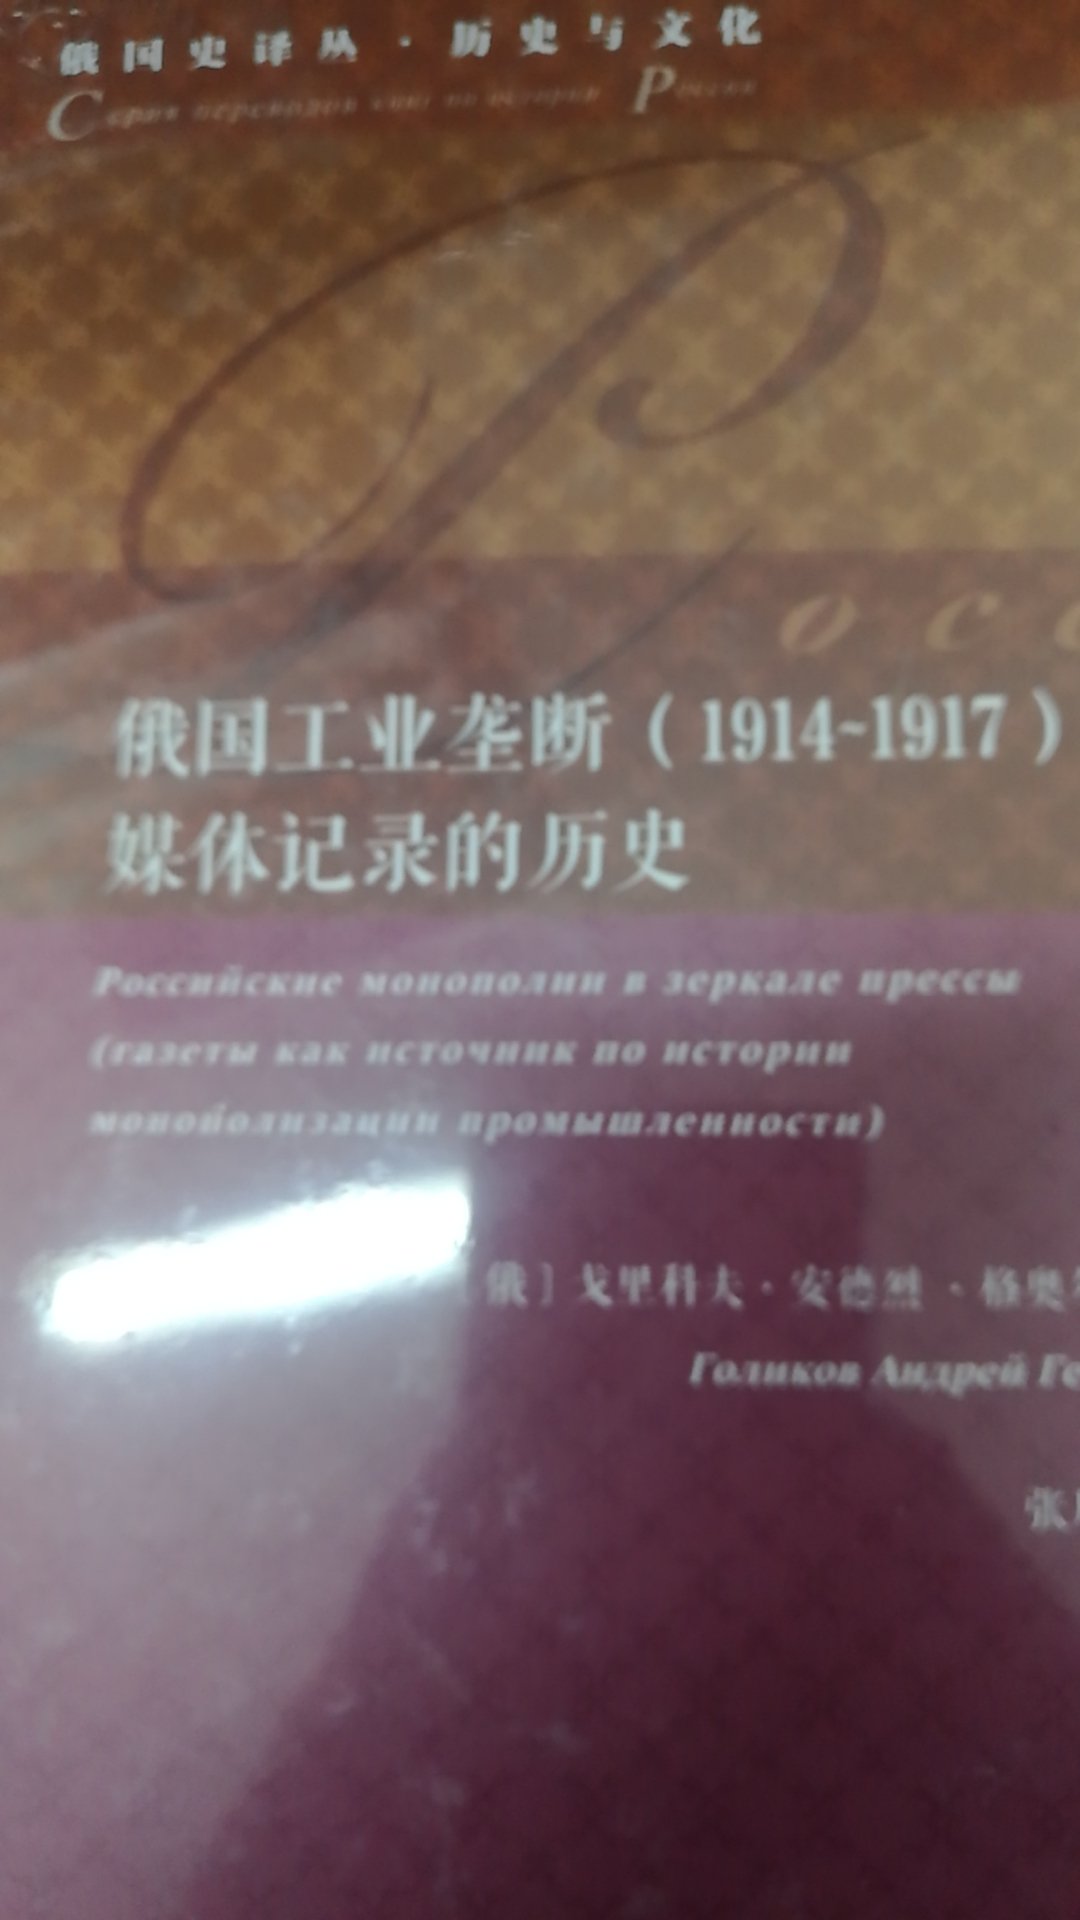 俄国史译丛系列丛书之一，社会科学文献出版社的宏篇